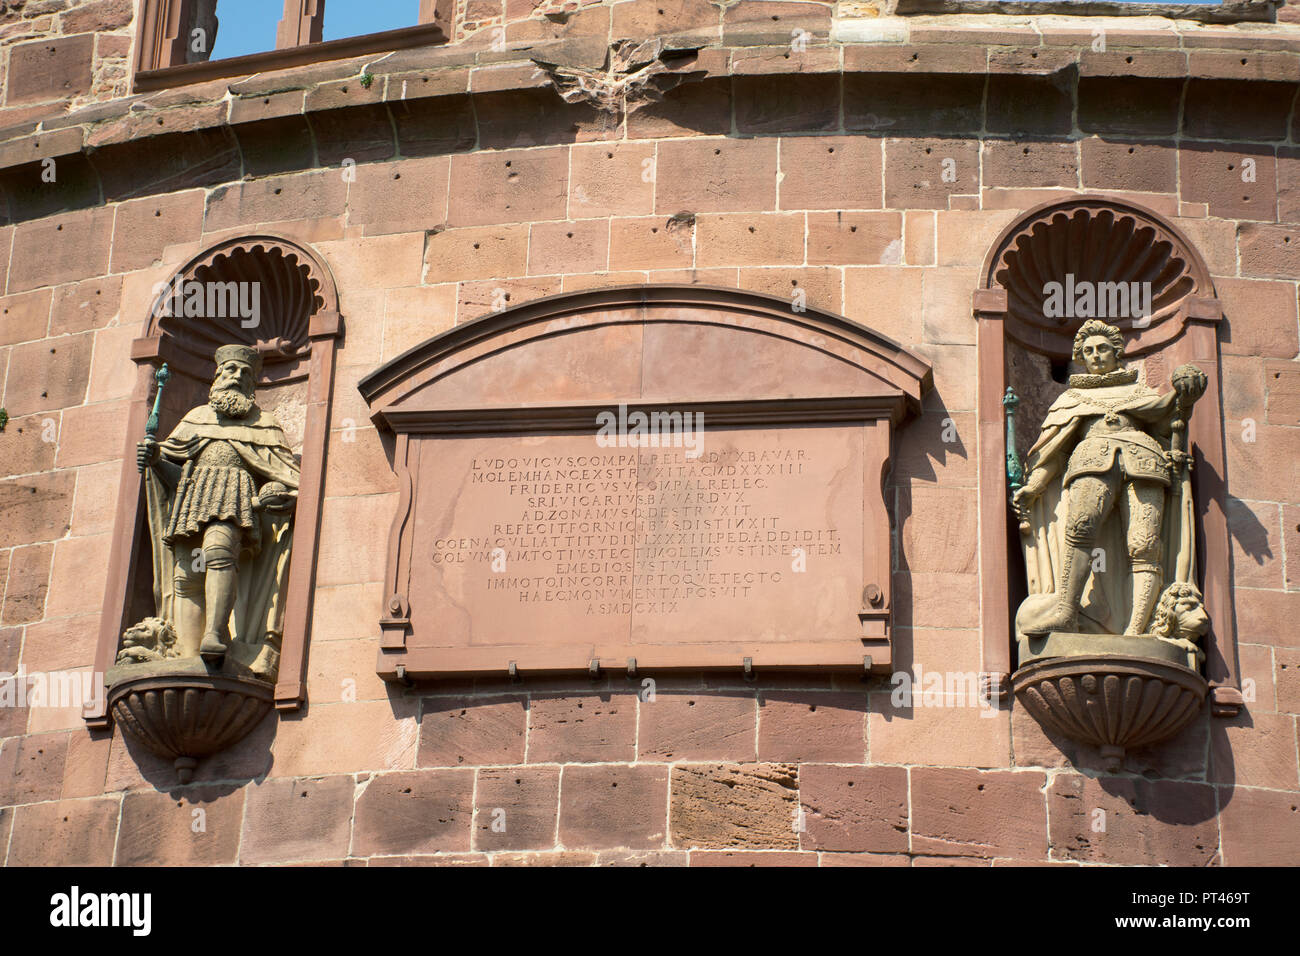 All'interno e le decorazioni del castello di Heidelberg e il tedesco chiamato Heidelberger Schloss è una rovina e punto di riferimento di Heidelberg in Baden-Württemberg, Germania tedesco Foto Stock